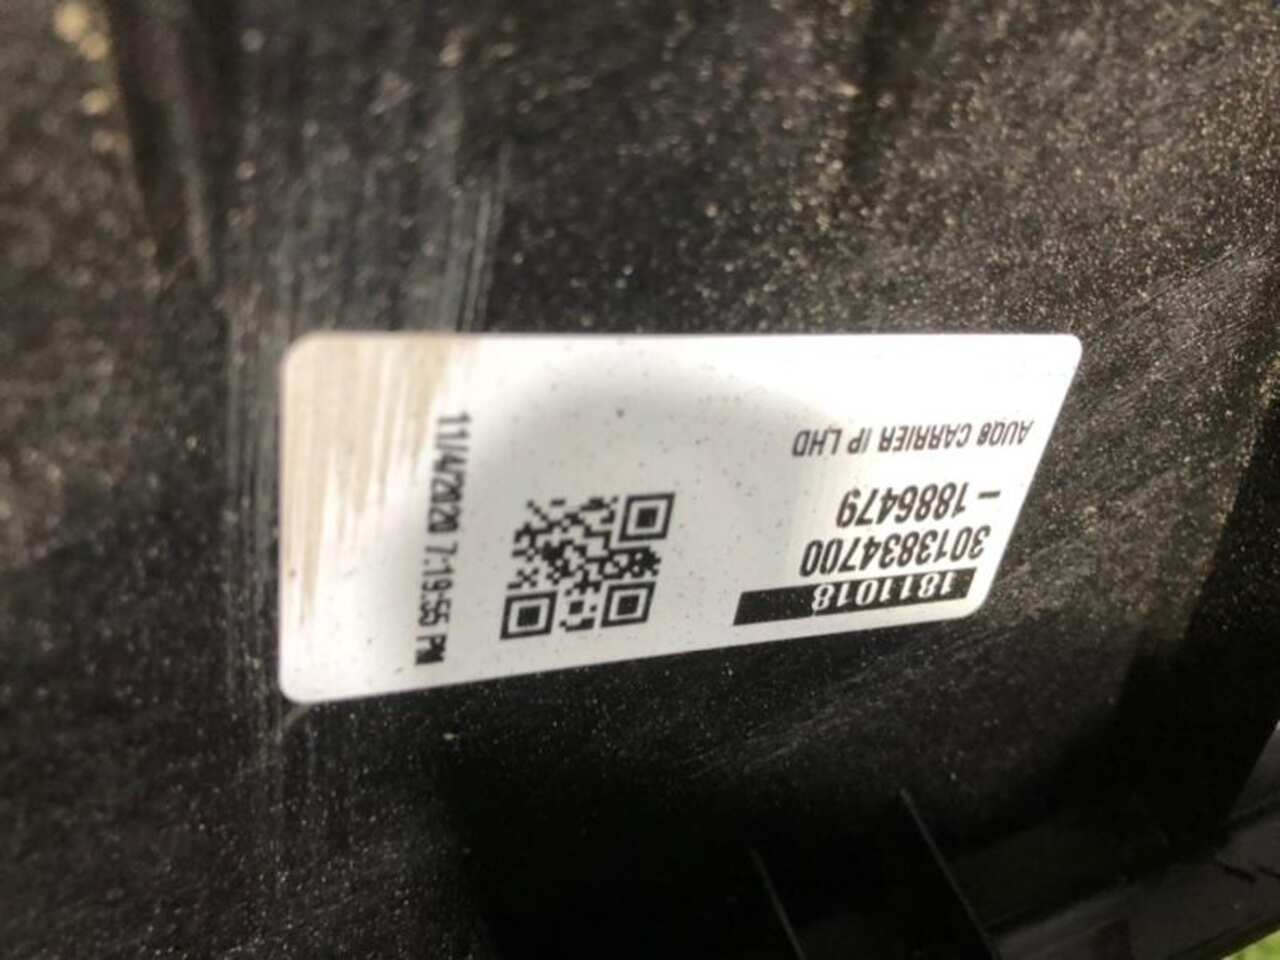 Комплект безопасности AUDI Q8 1 (2018-Н.В.) 4M8857001B D7852